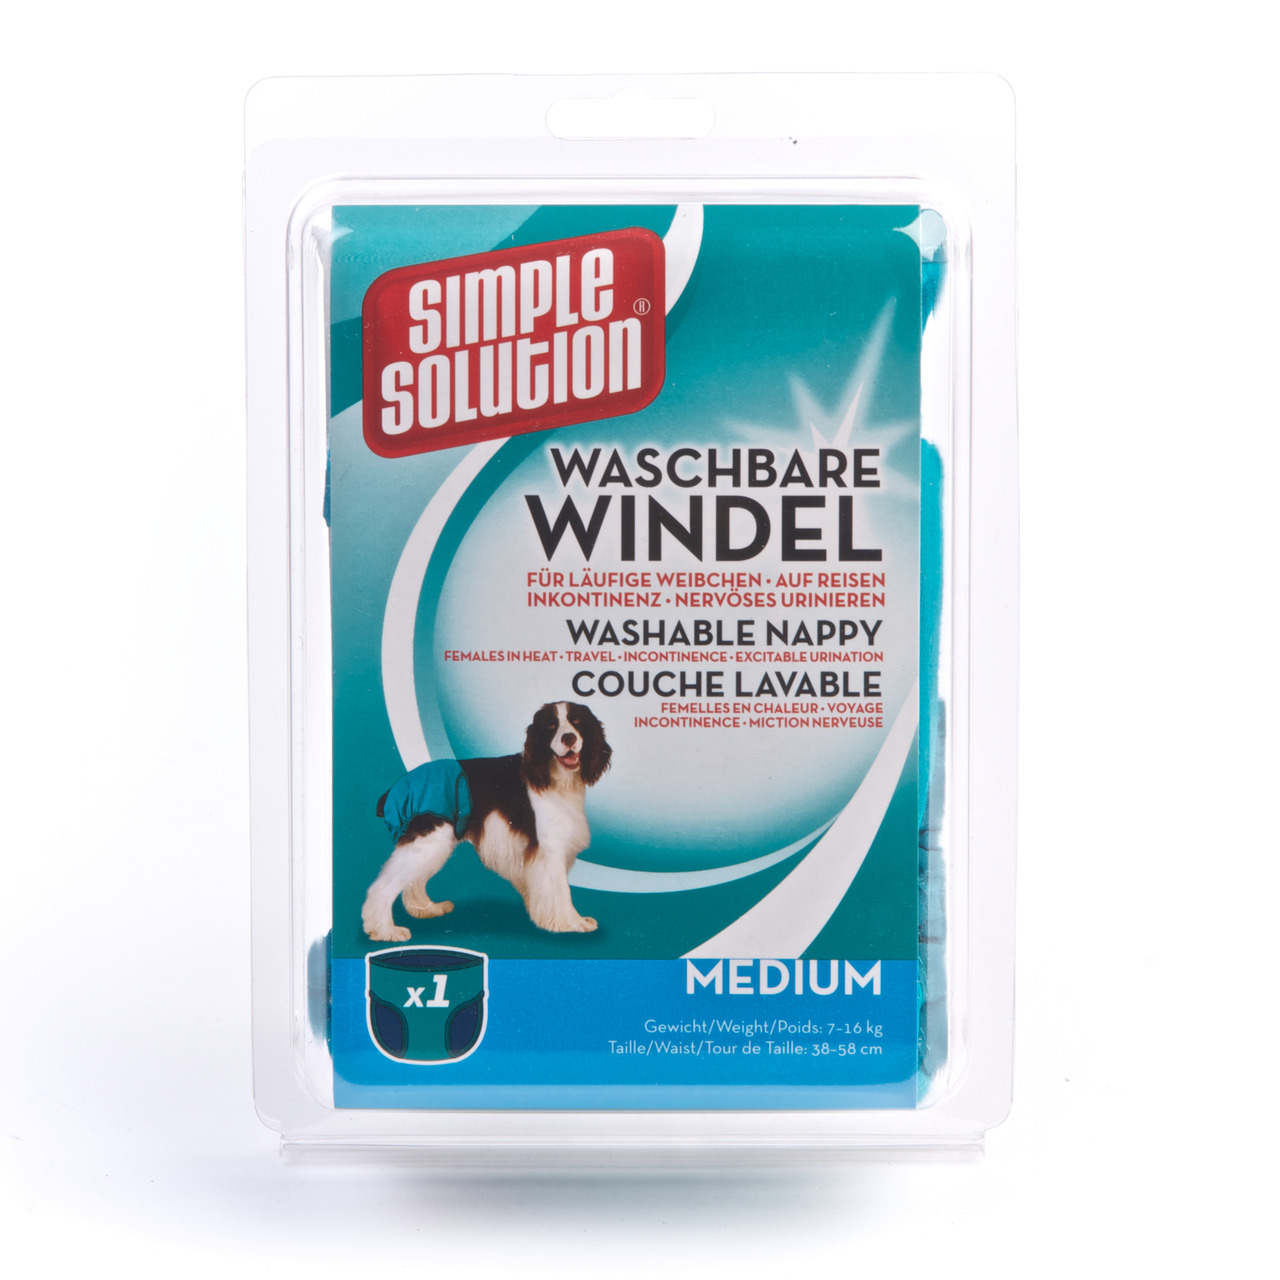 Simple Solution waschbare Windel Hunde Hygiene Inkontinenz M